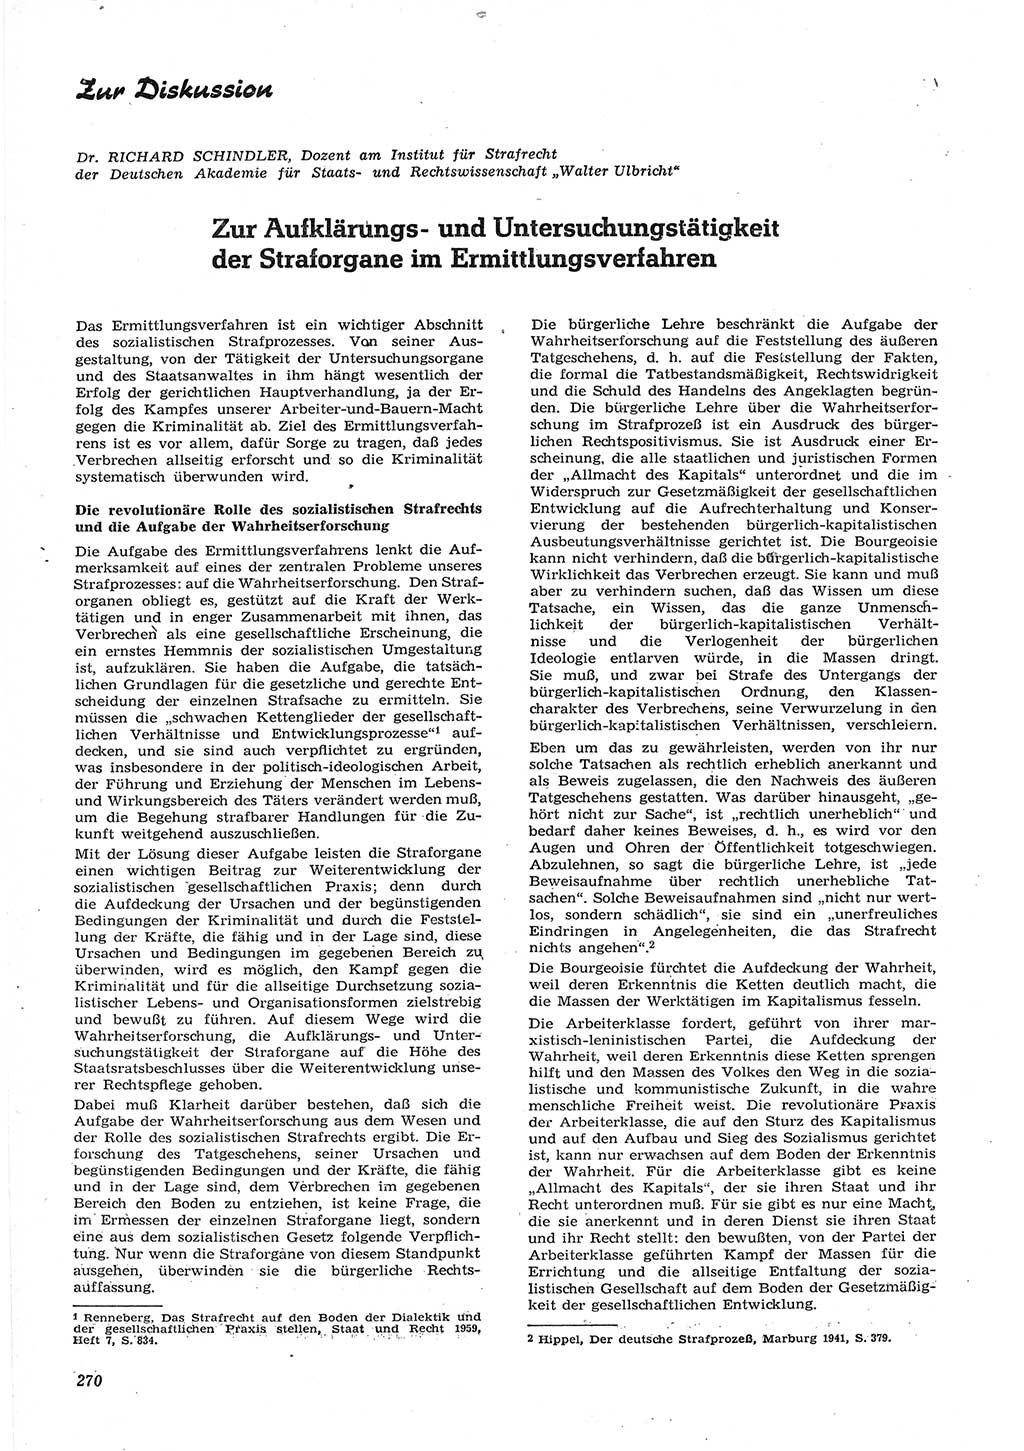 Neue Justiz (NJ), Zeitschrift für Recht und Rechtswissenschaft [Deutsche Demokratische Republik (DDR)], 15. Jahrgang 1961, Seite 270 (NJ DDR 1961, S. 270)